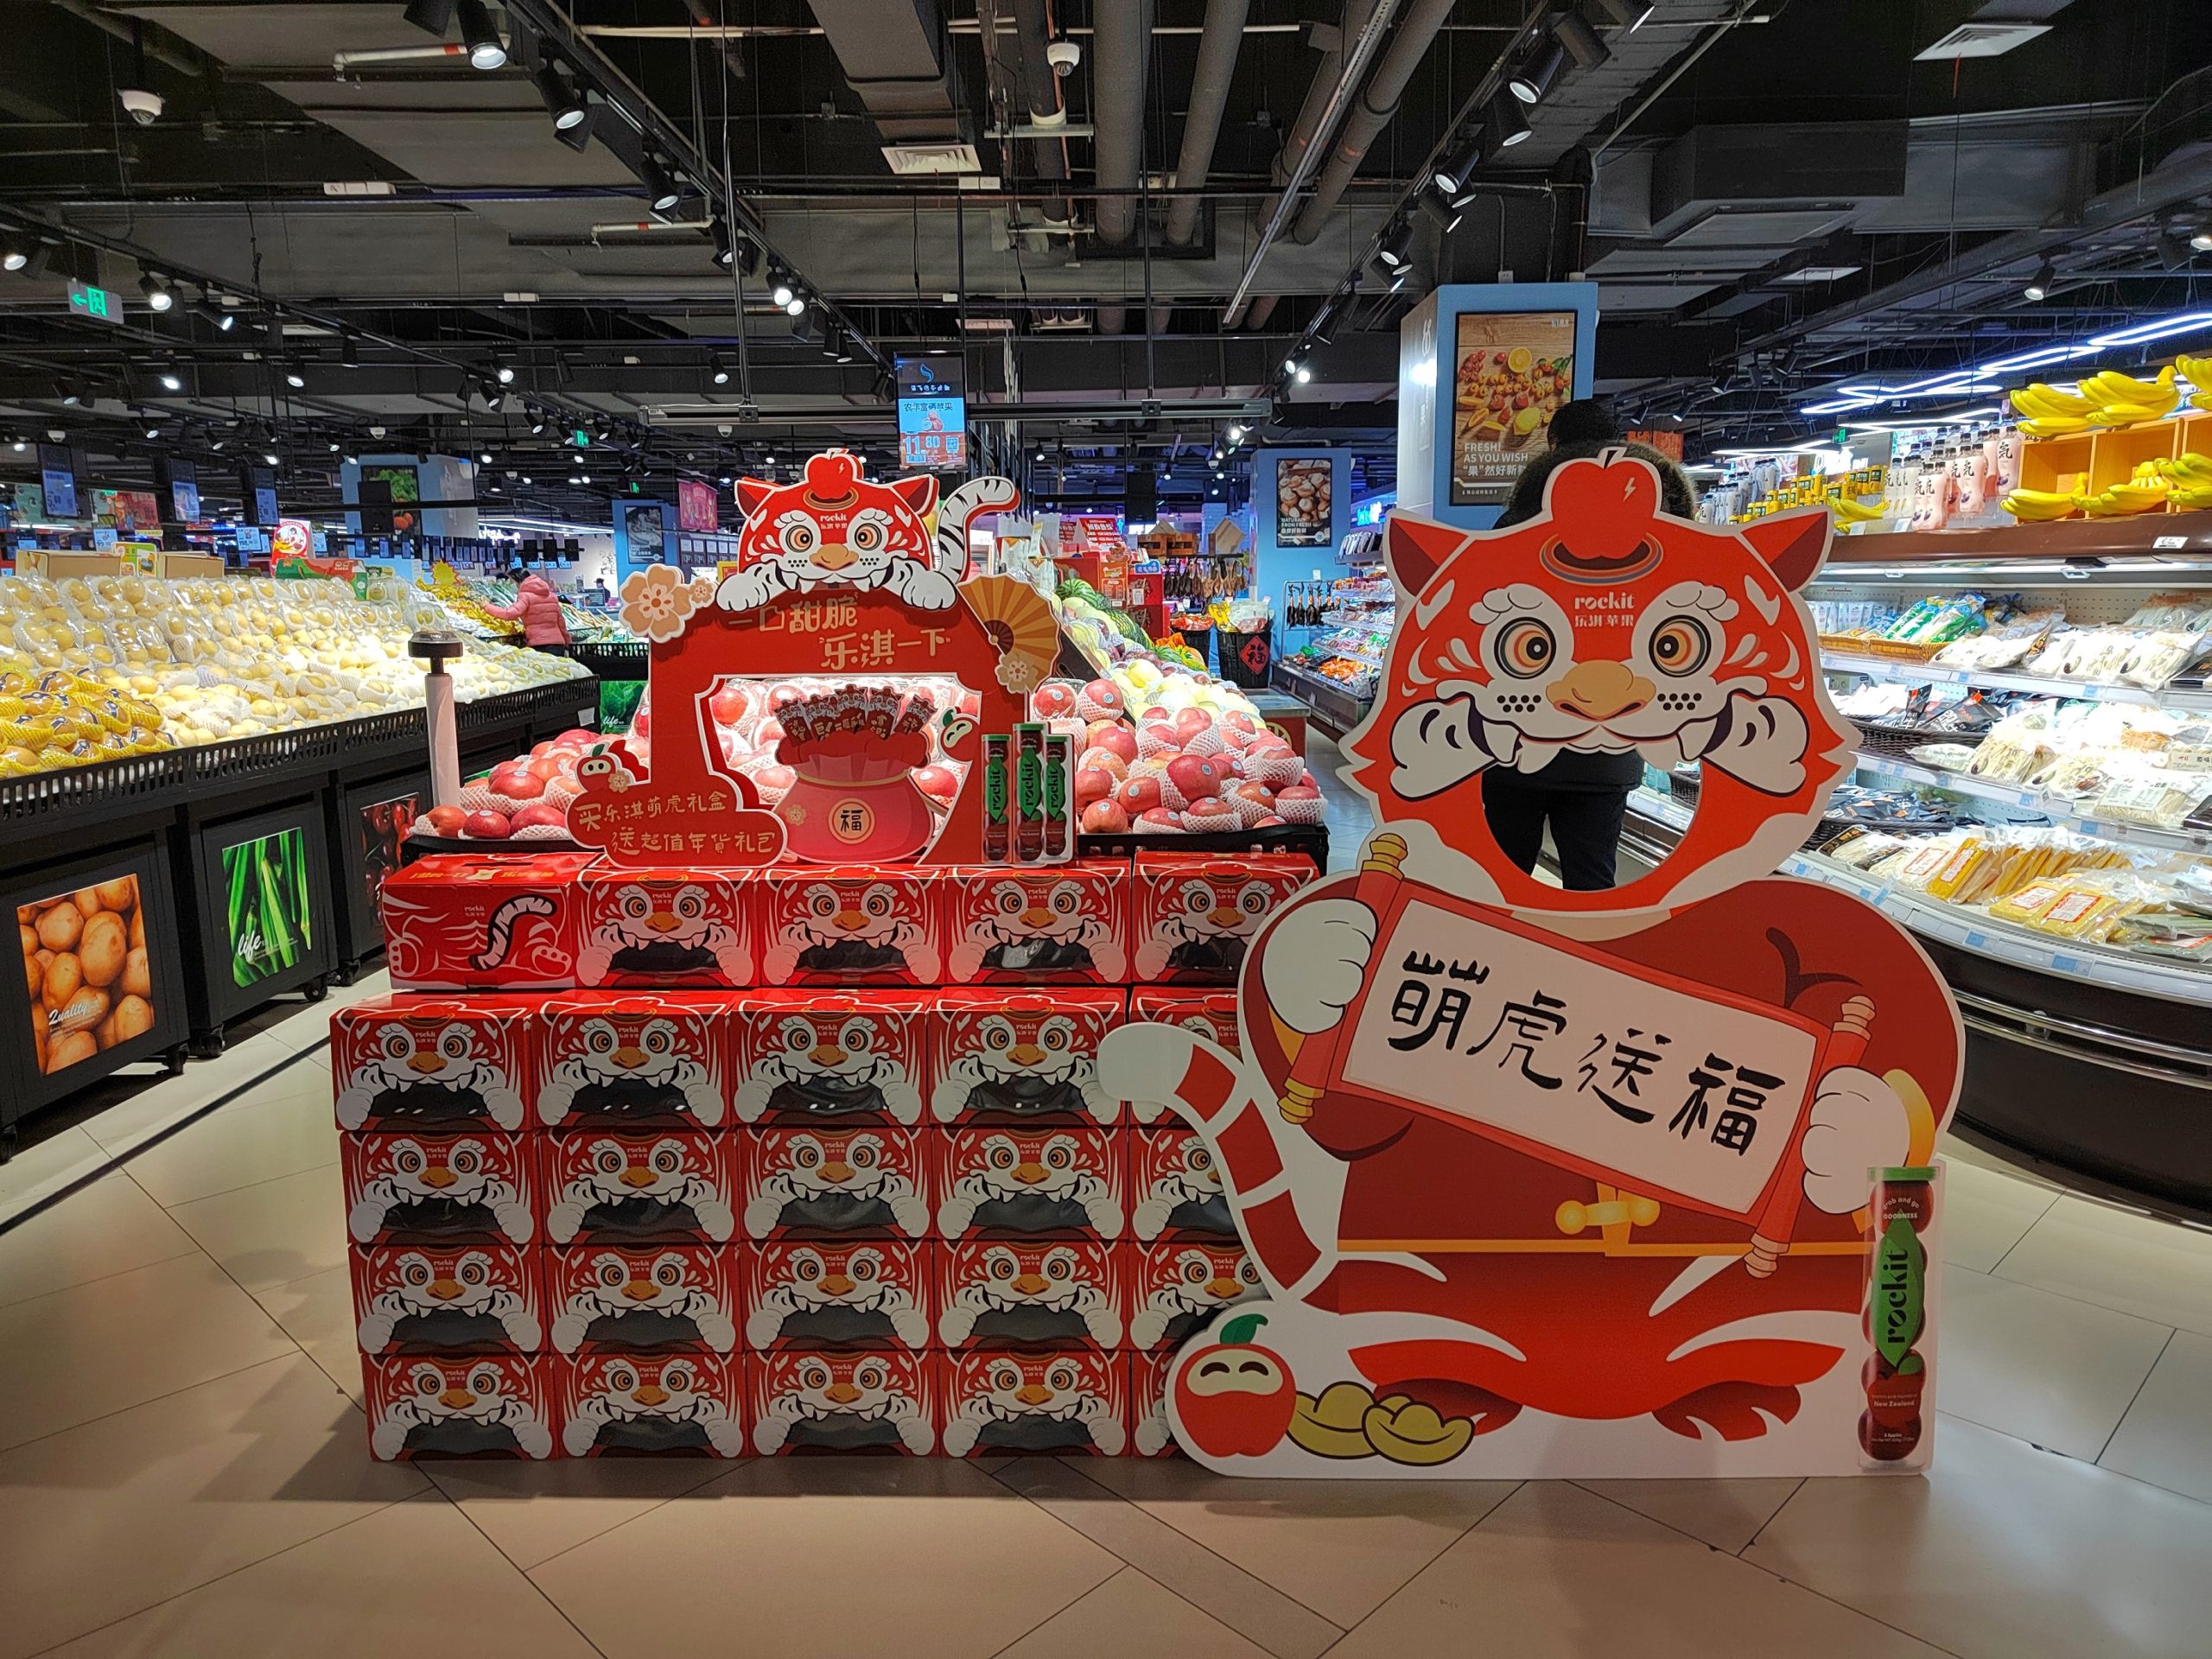 Chinese new year retail display, Berry Bros & Rudd